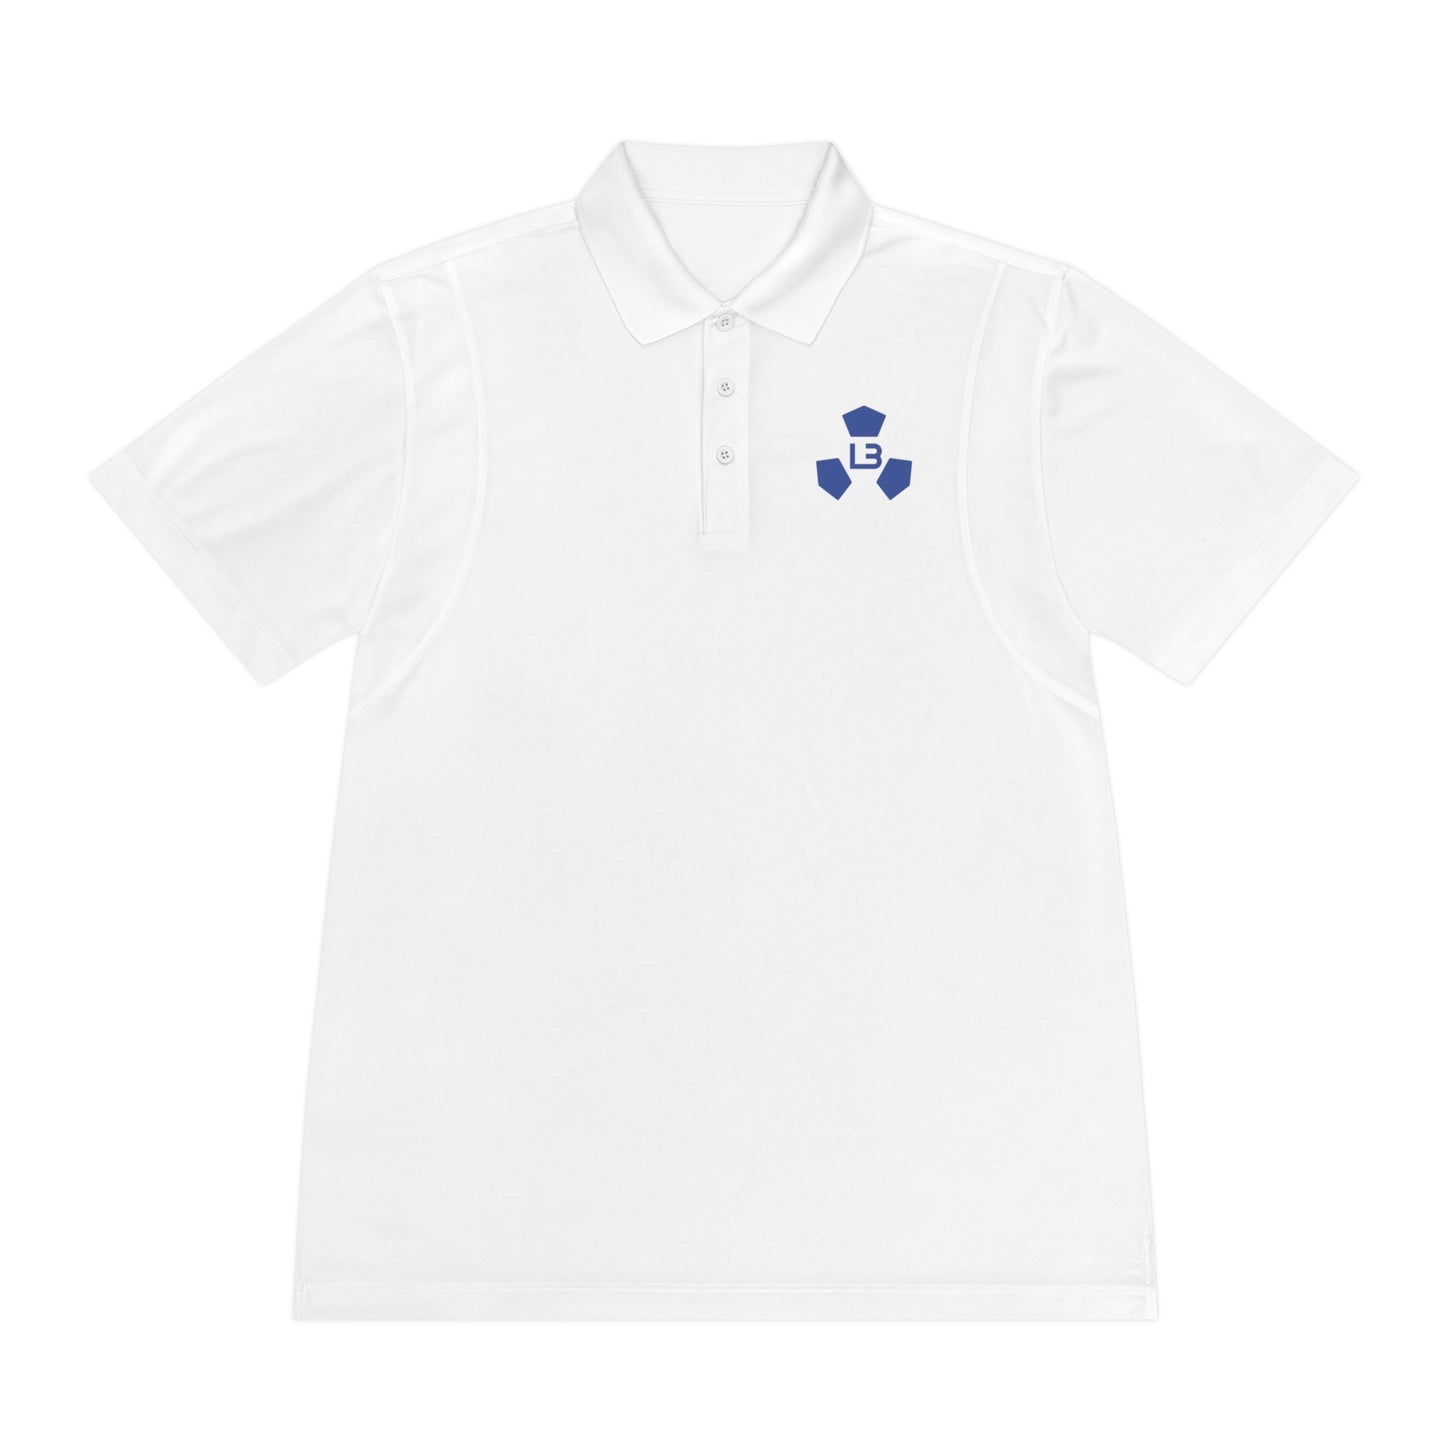 Lyngby Kobenhavn (80's logo) Men's Sport Polo Shirt